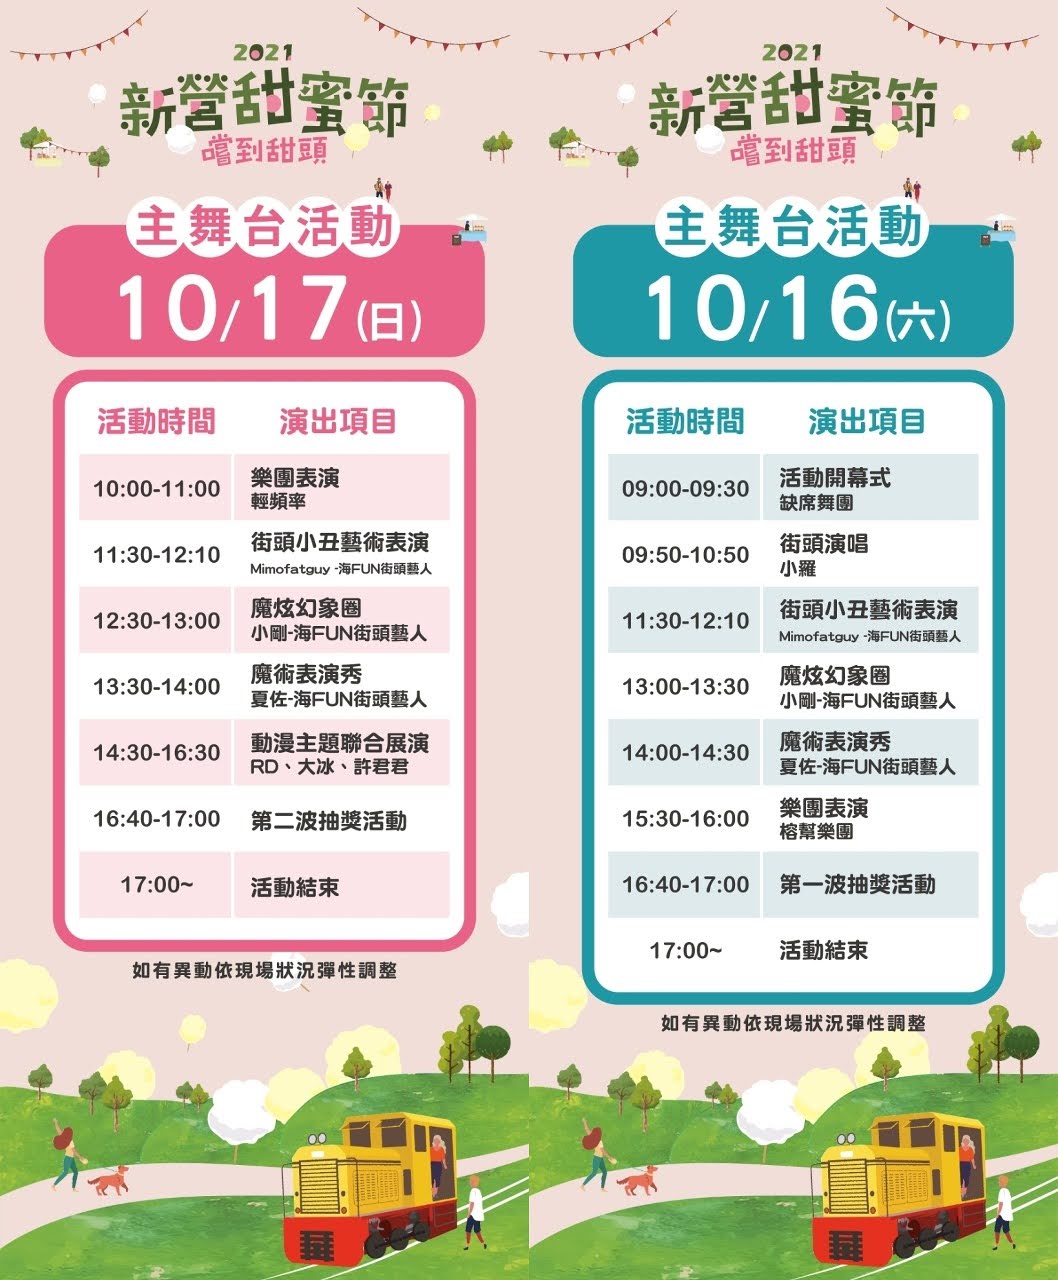 2021新營甜蜜節10/16-17登場｜姓名有「甜蜜」同音者免費吃冰｜活動